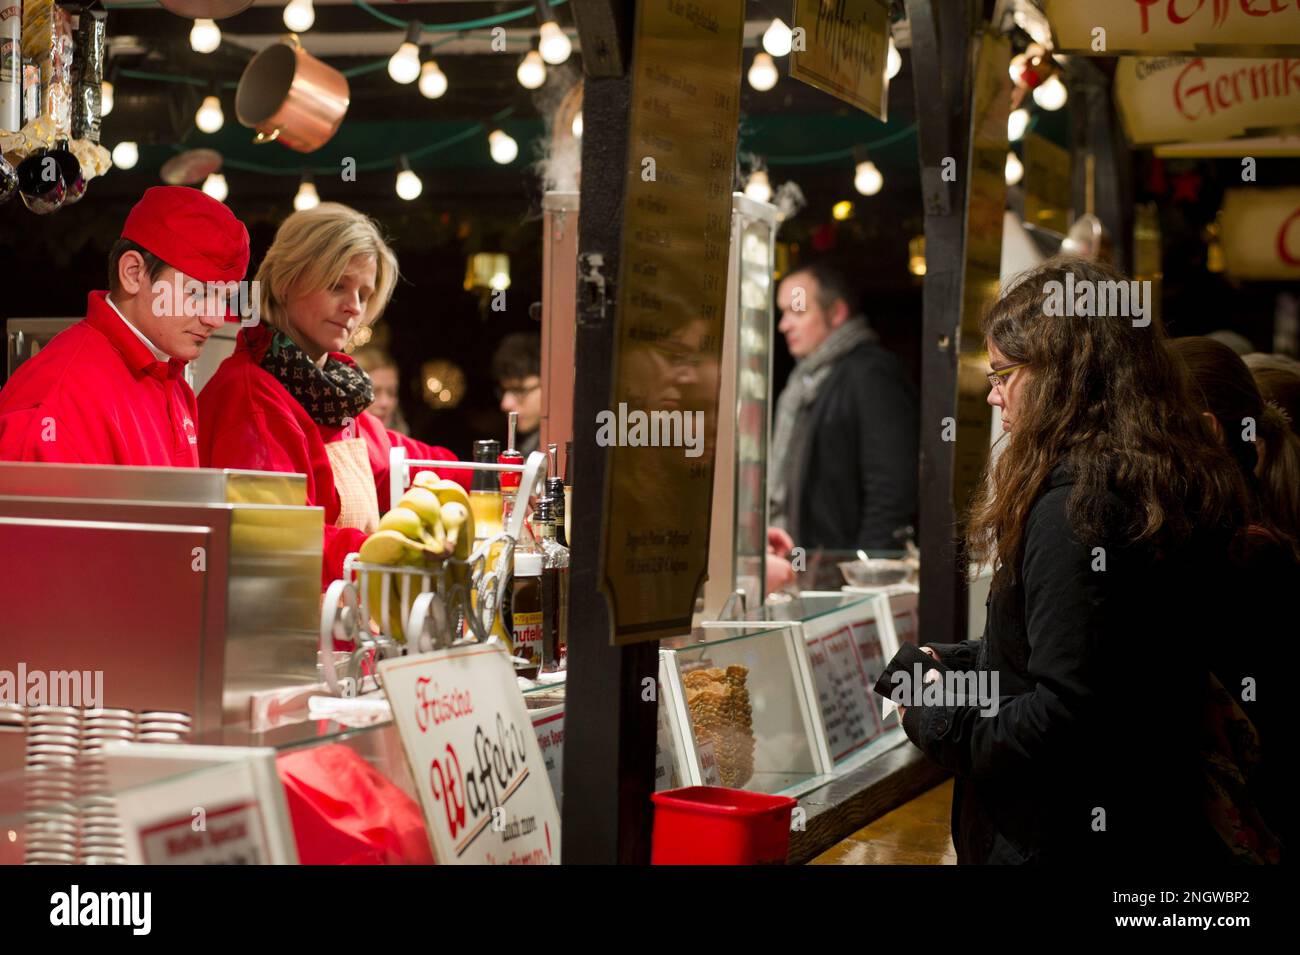 Bonn Marche de Noel sur plusieurs Places de la Cite. Produits de bouche, vin chaud, saucisses allemandes et nombreuses idees cadeaux en font un marche Foto Stock